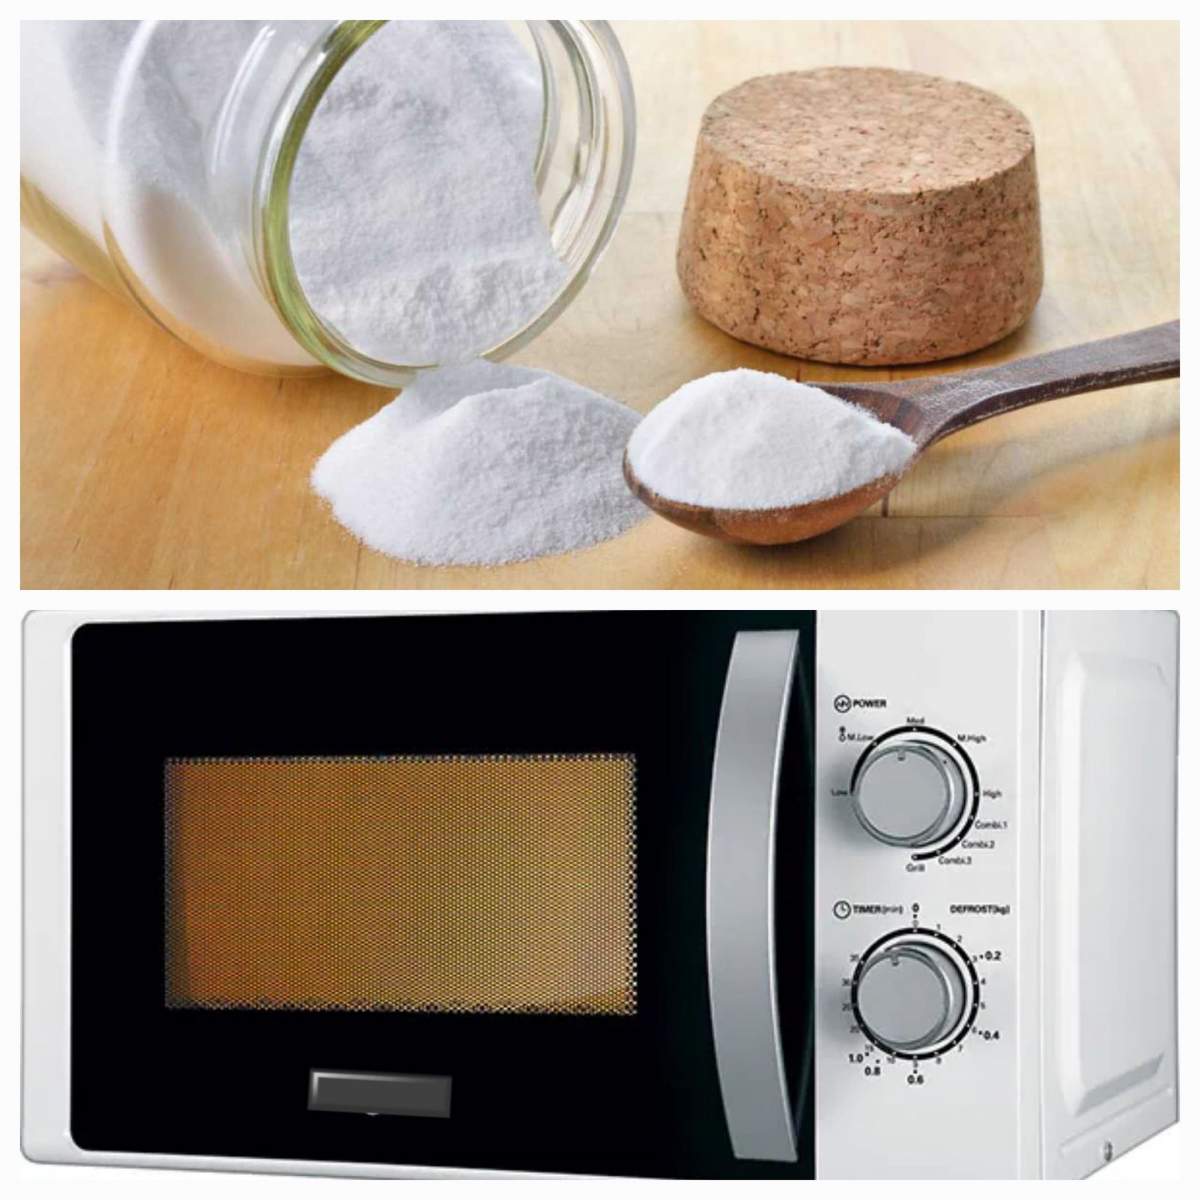 Bicarbonat de sodiu pentru curățarea cuptorului cu microunde. Un truc ieftin, util și ușor